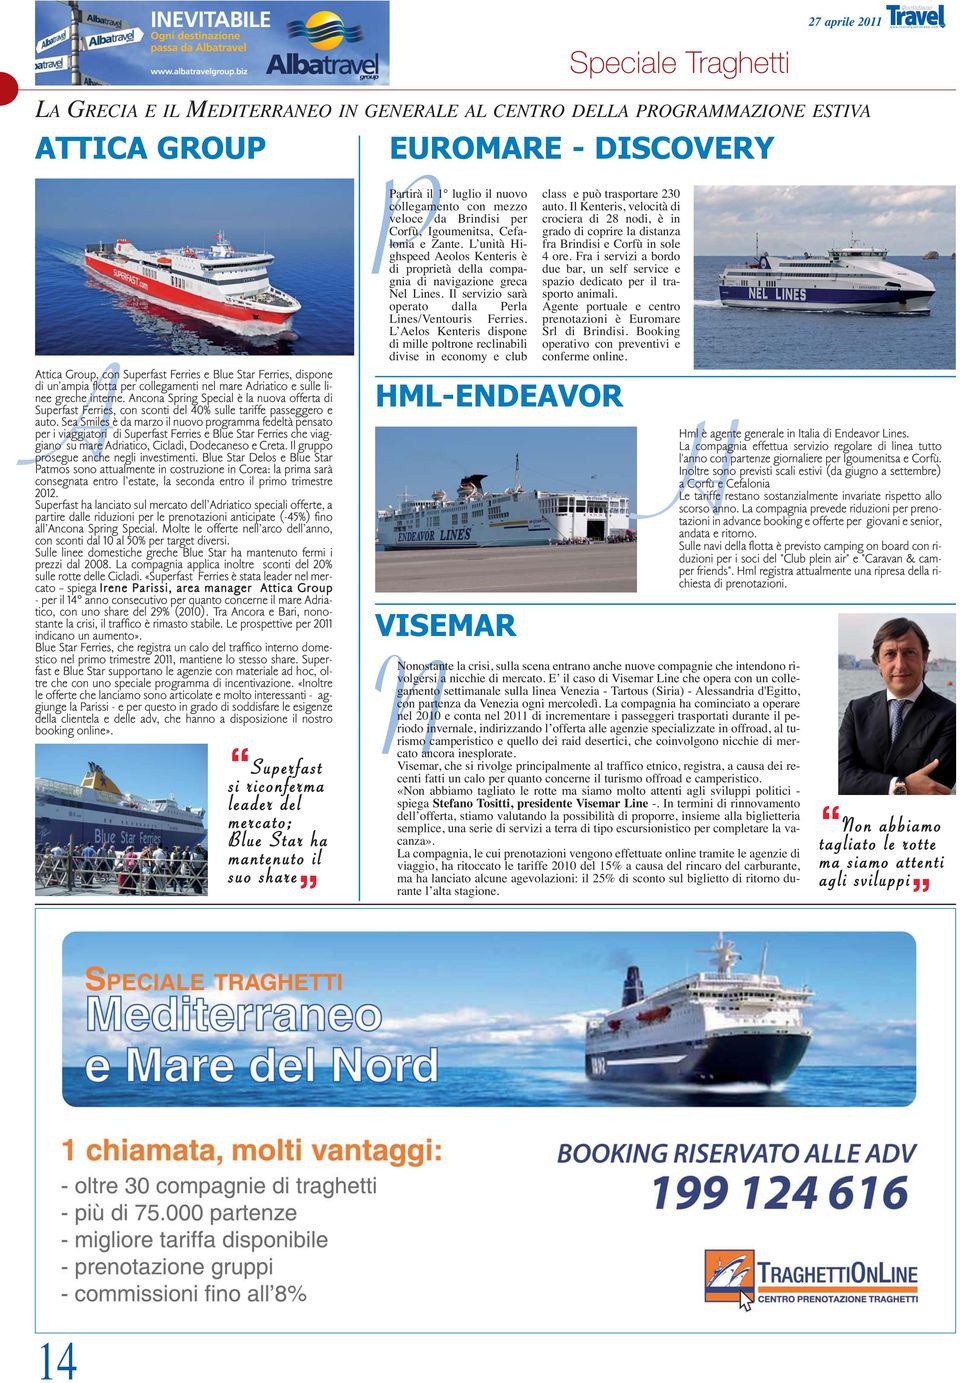 Ancona Spring Special è la nuova offerta di Superfast Ferries, con sconti del 40% sulle tariffe passeggero e auto.